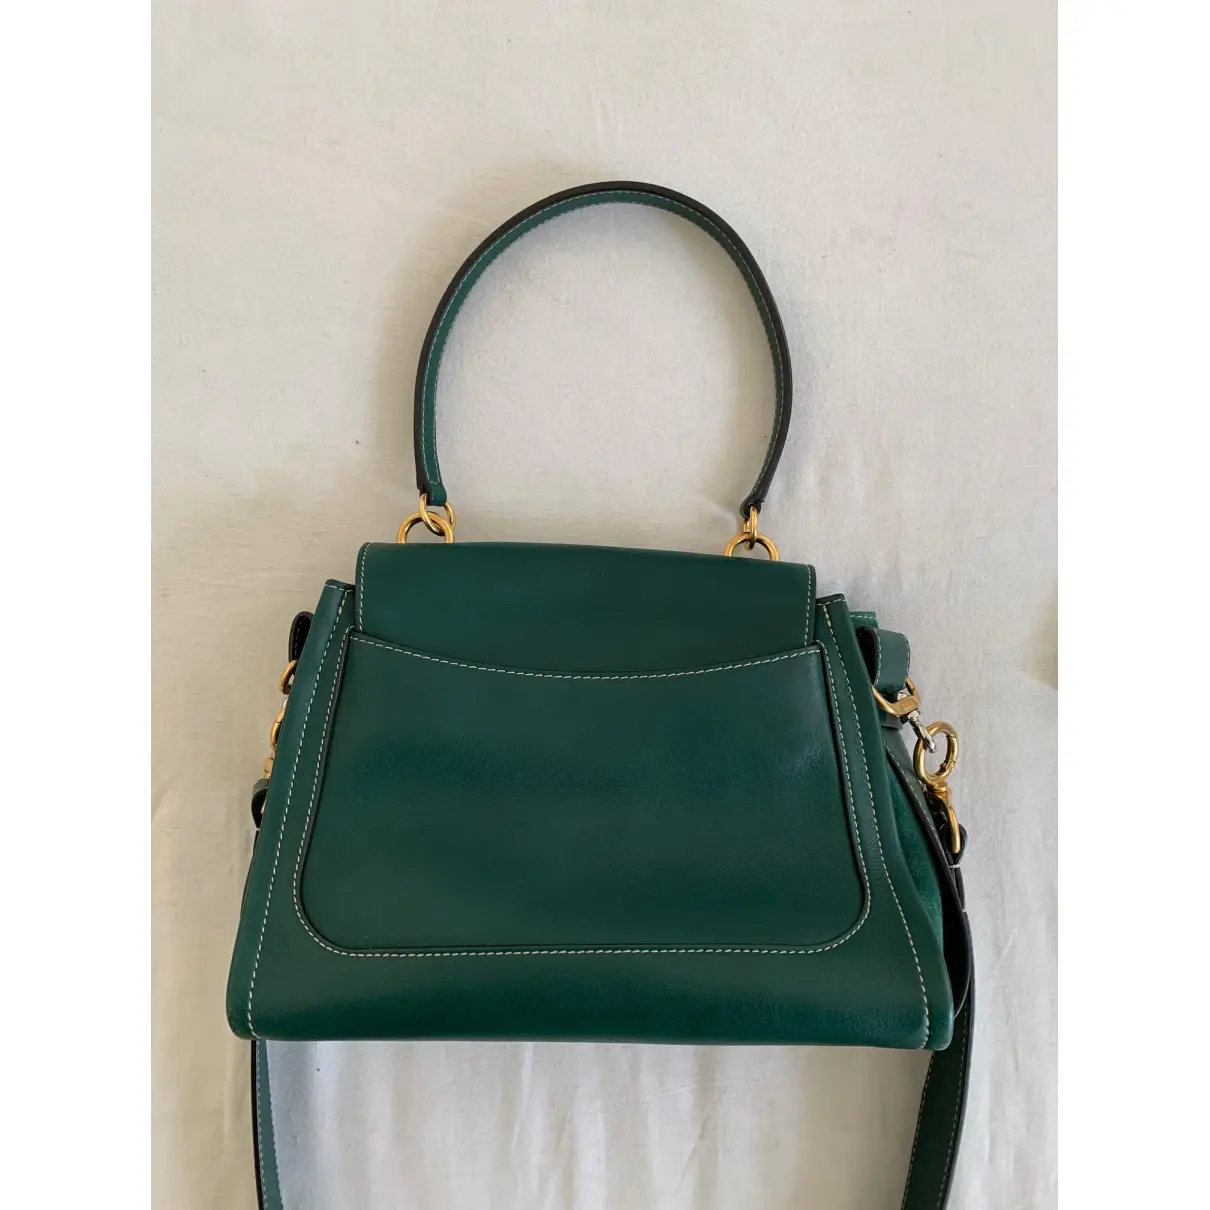 Buy Chloé Handbag online